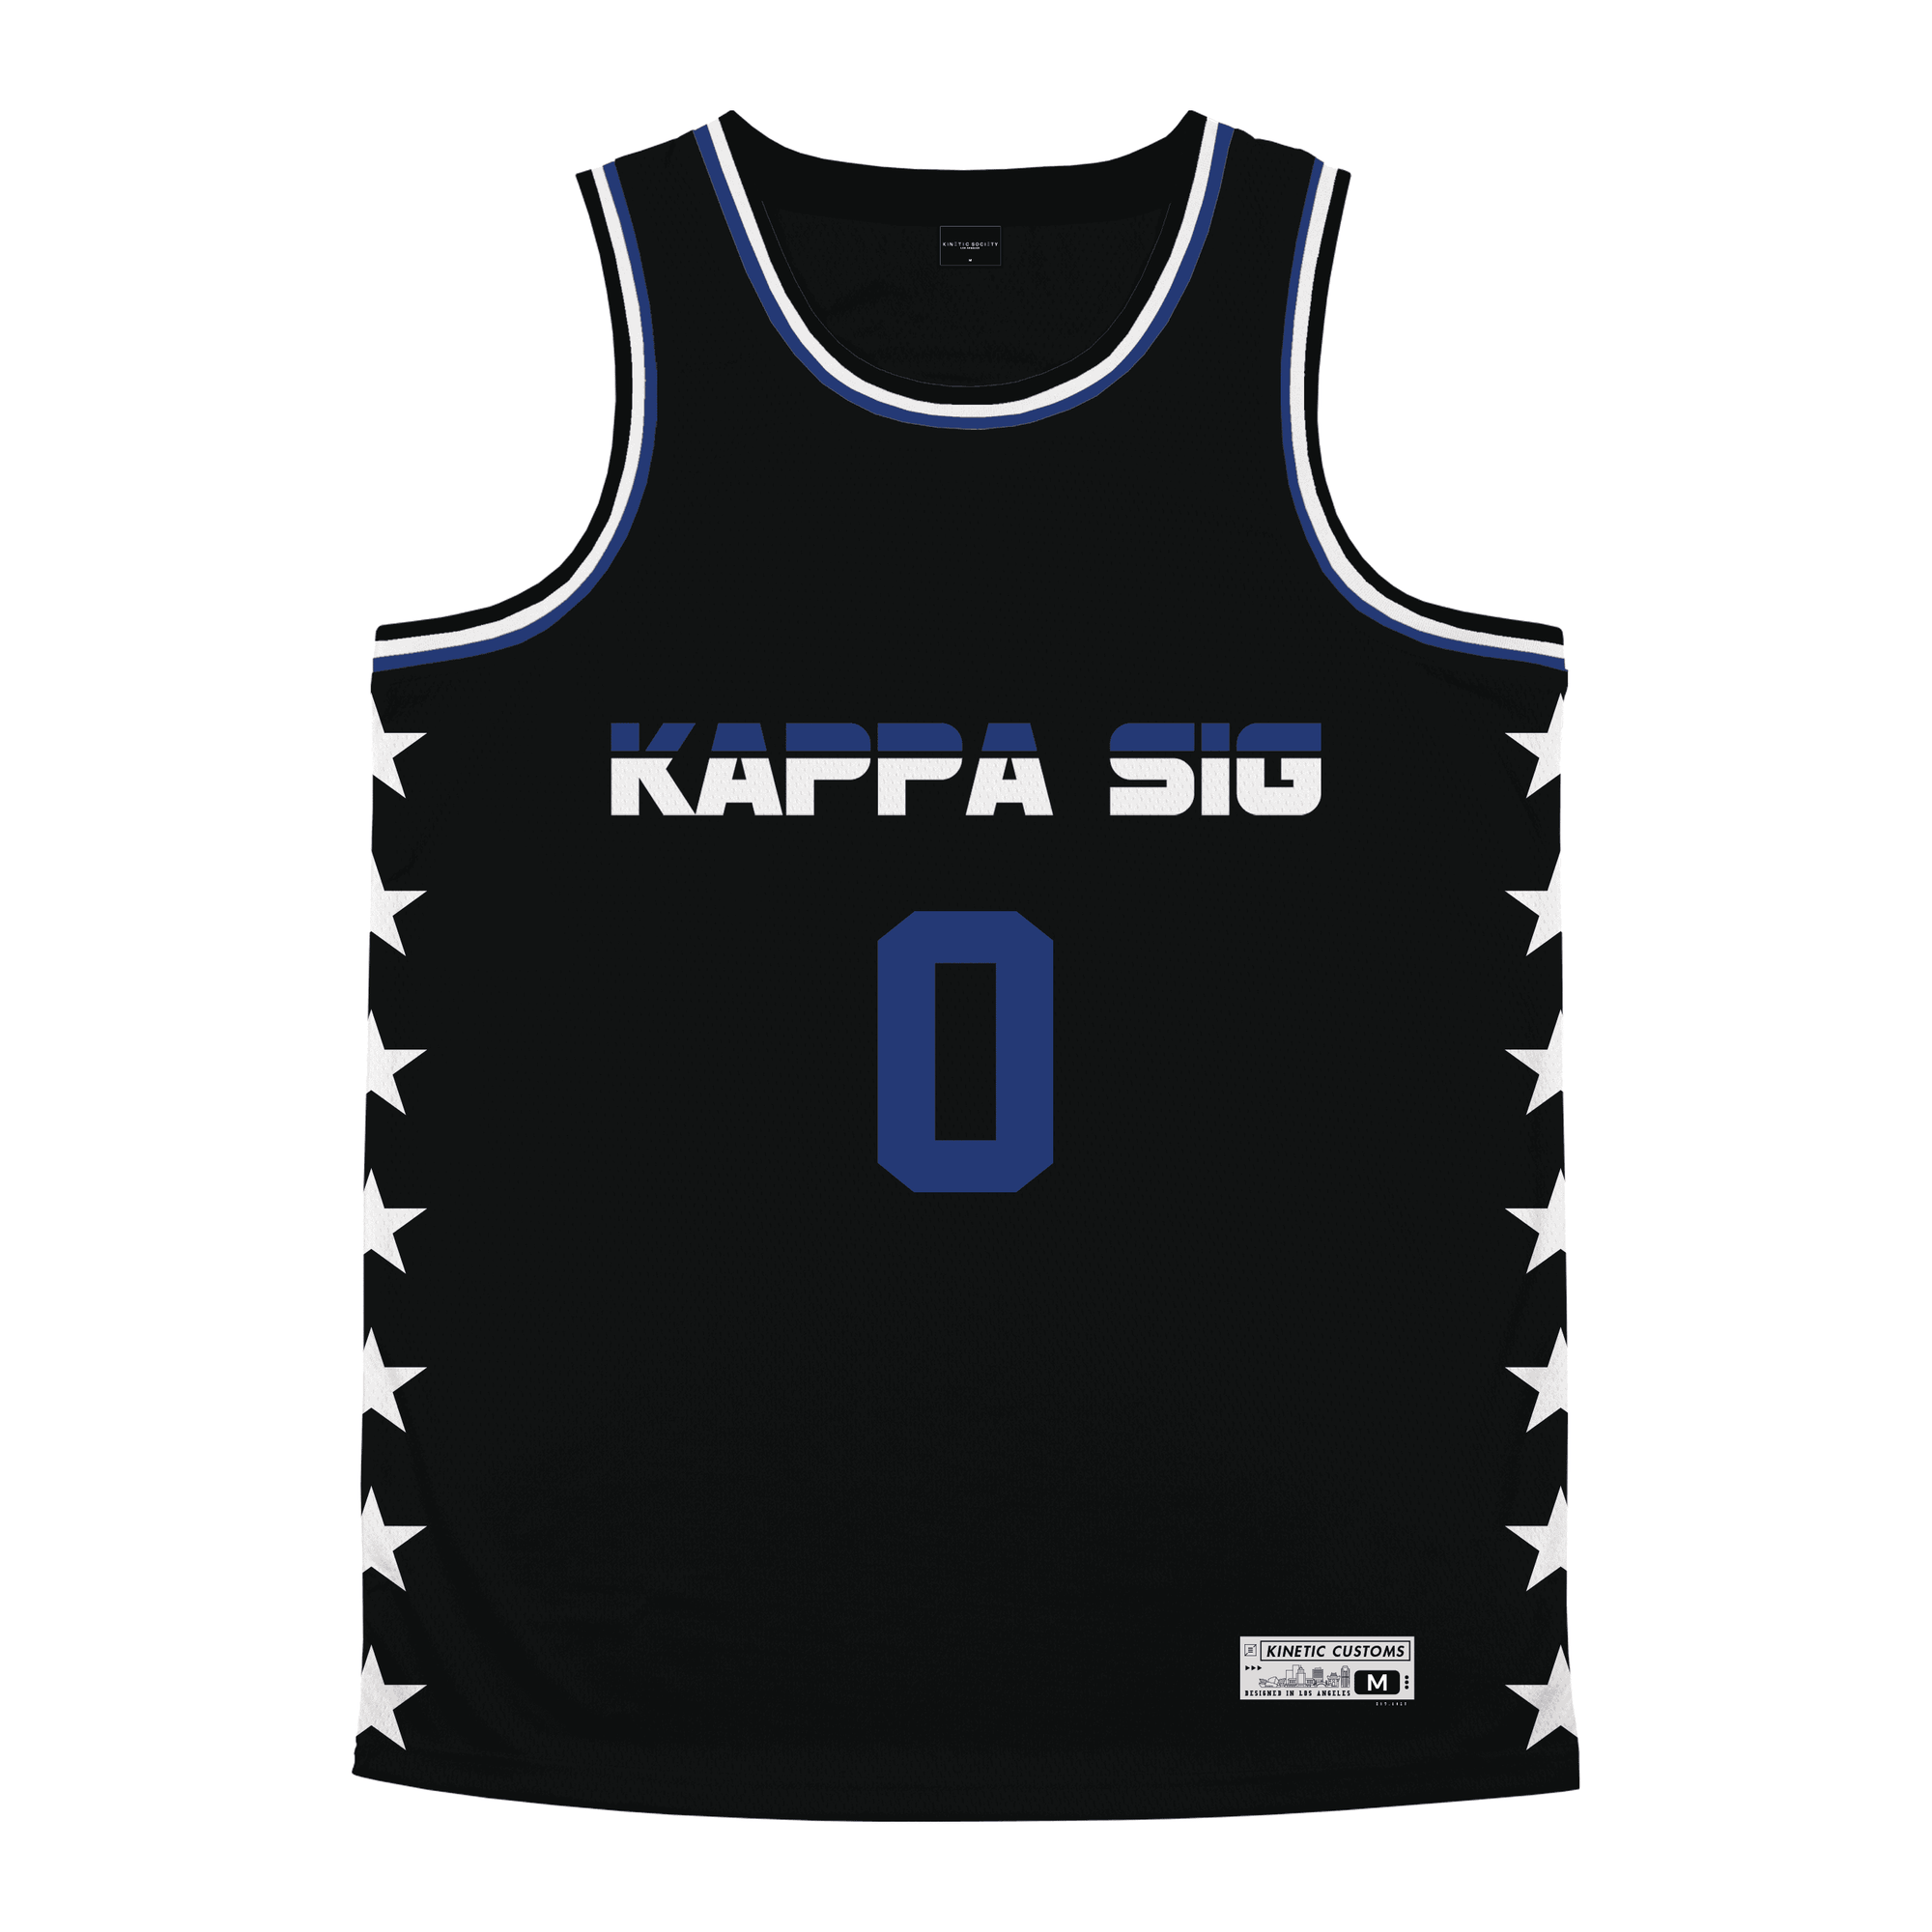 Kappa Sigma - Black Star Night Mode Basketball Jersey